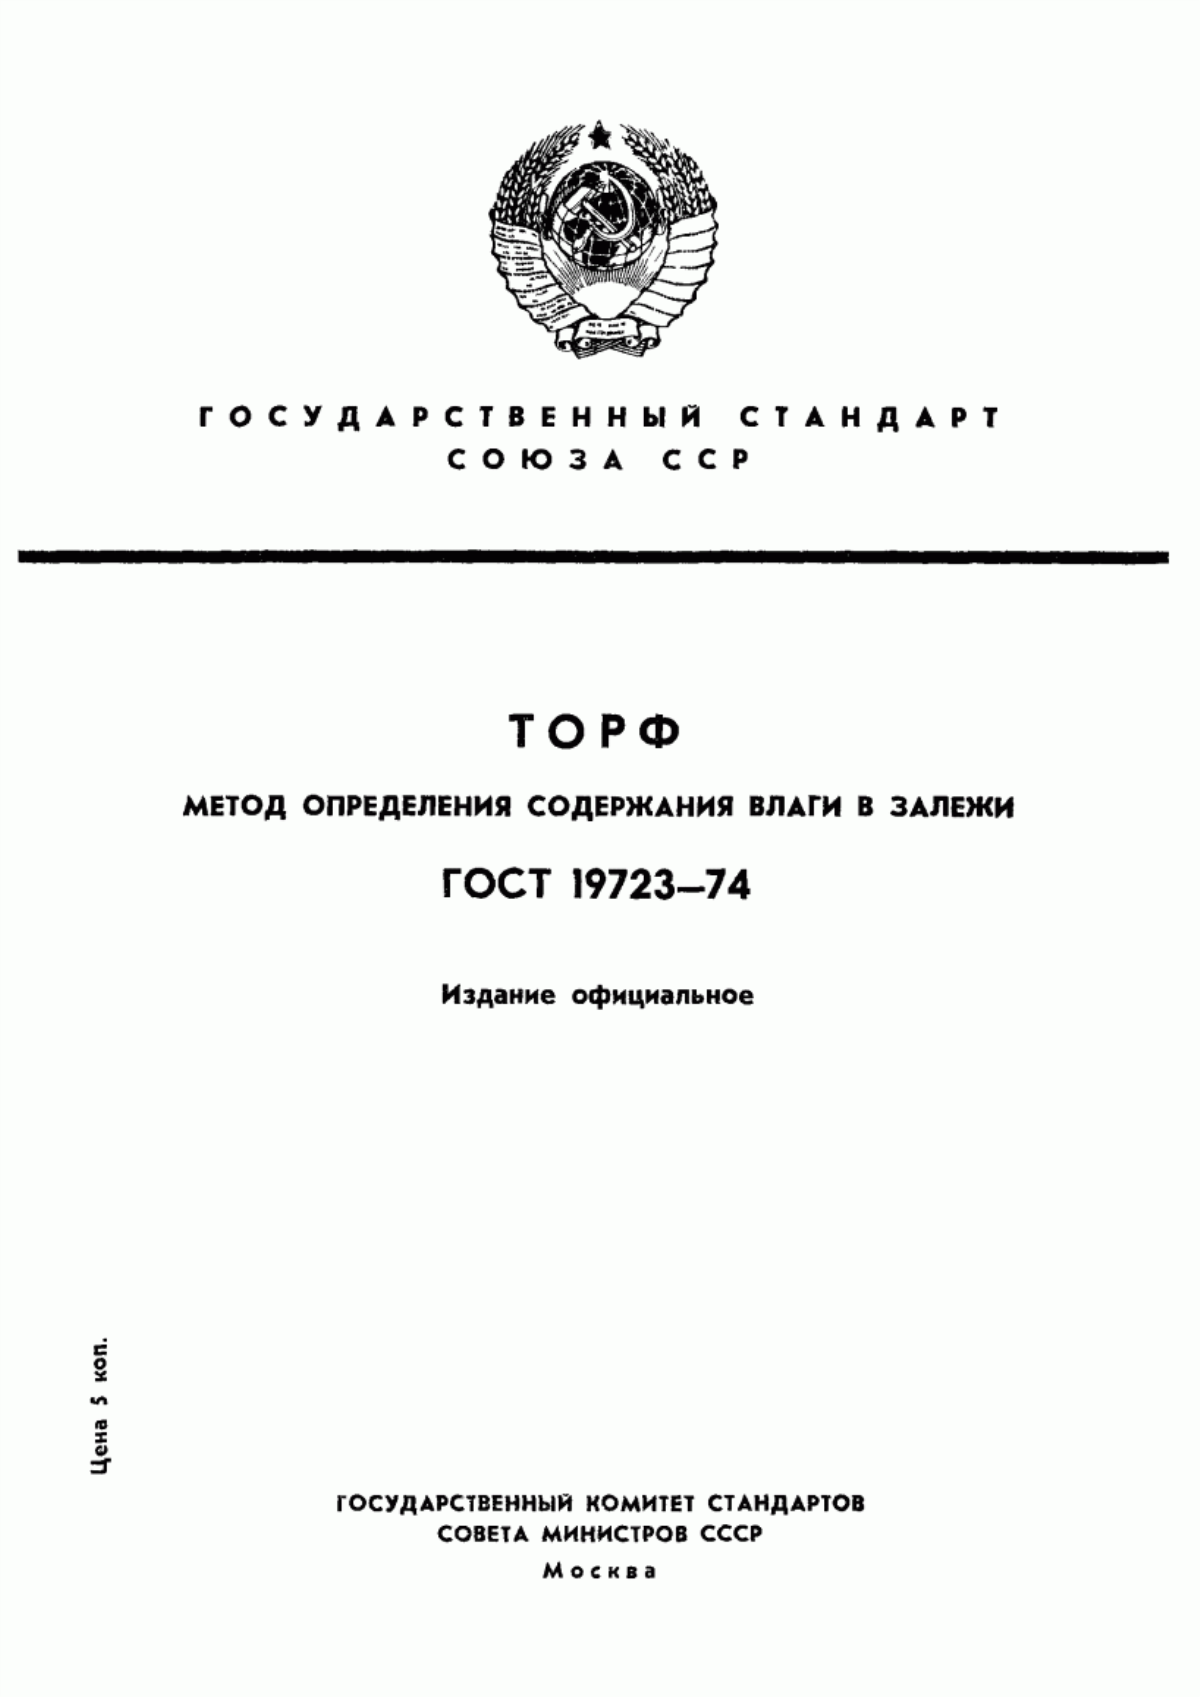 ГОСТ 19723-74 Торф. Метод определения содержания влаги в залежи